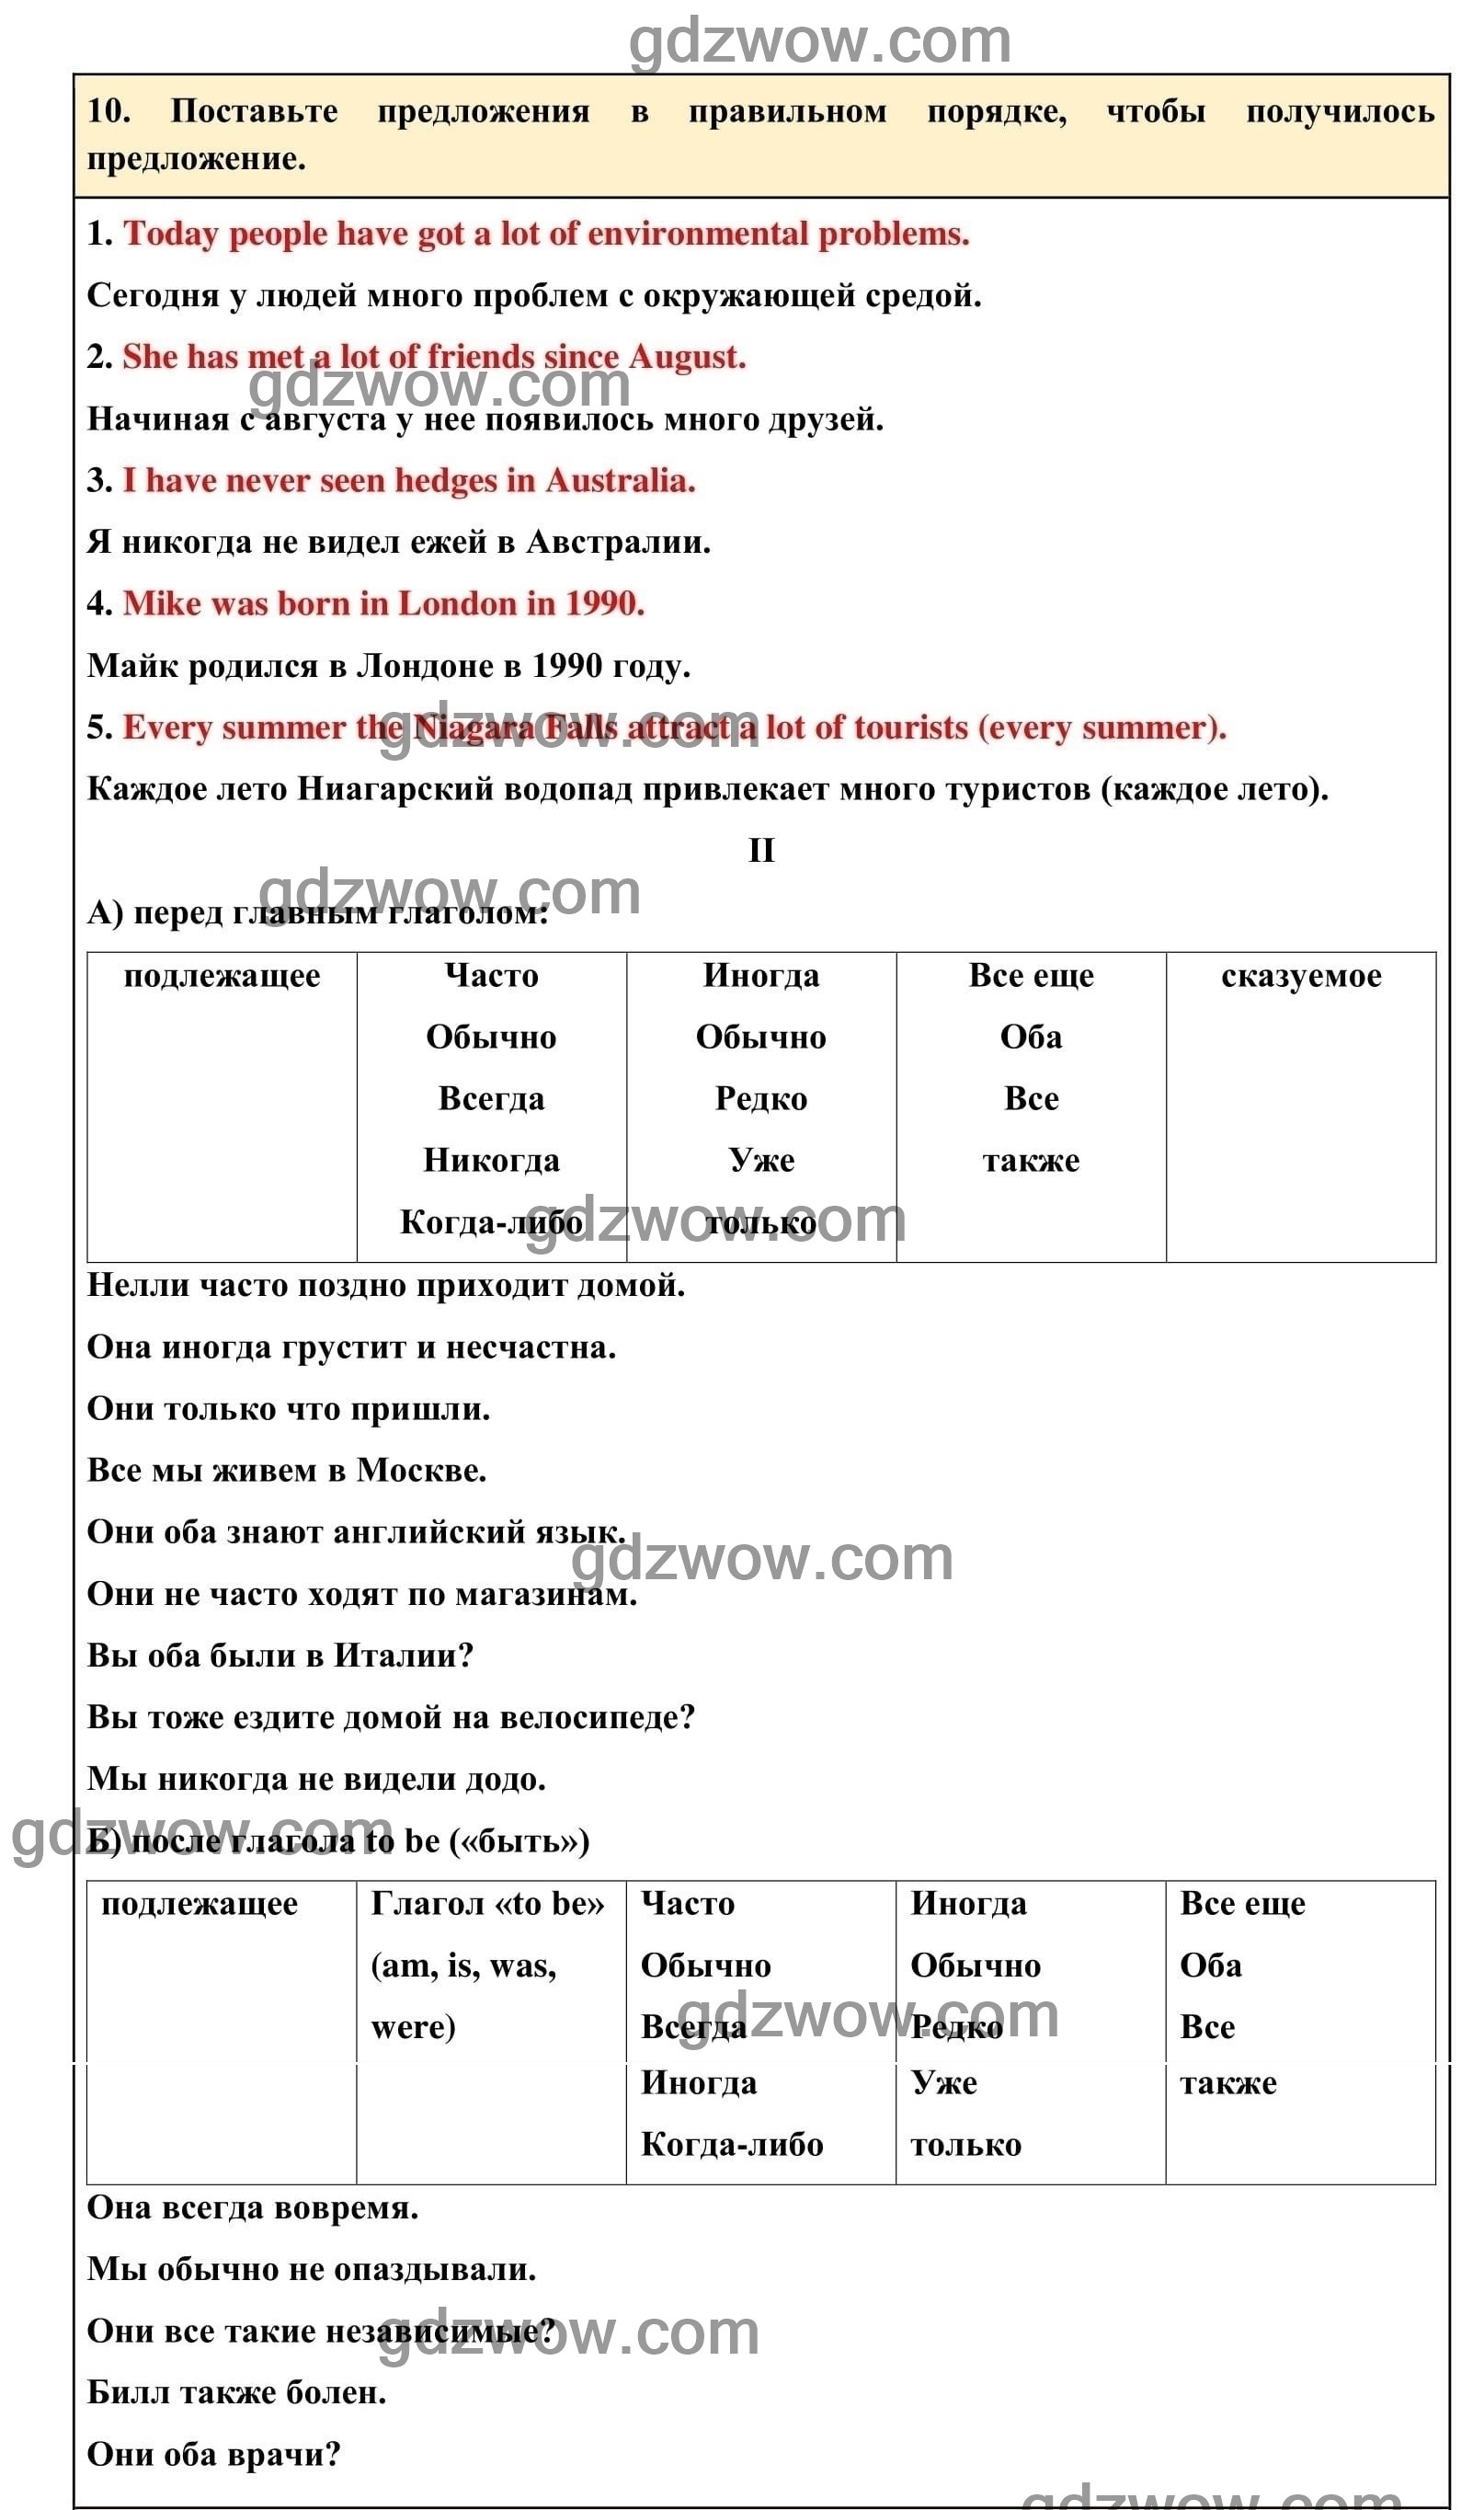 Номер 10 - ГДЗ по Английскому языку для 6 класса Учебник Афанасьева, Михеева. Unit 21. (решебник) - GDZwow